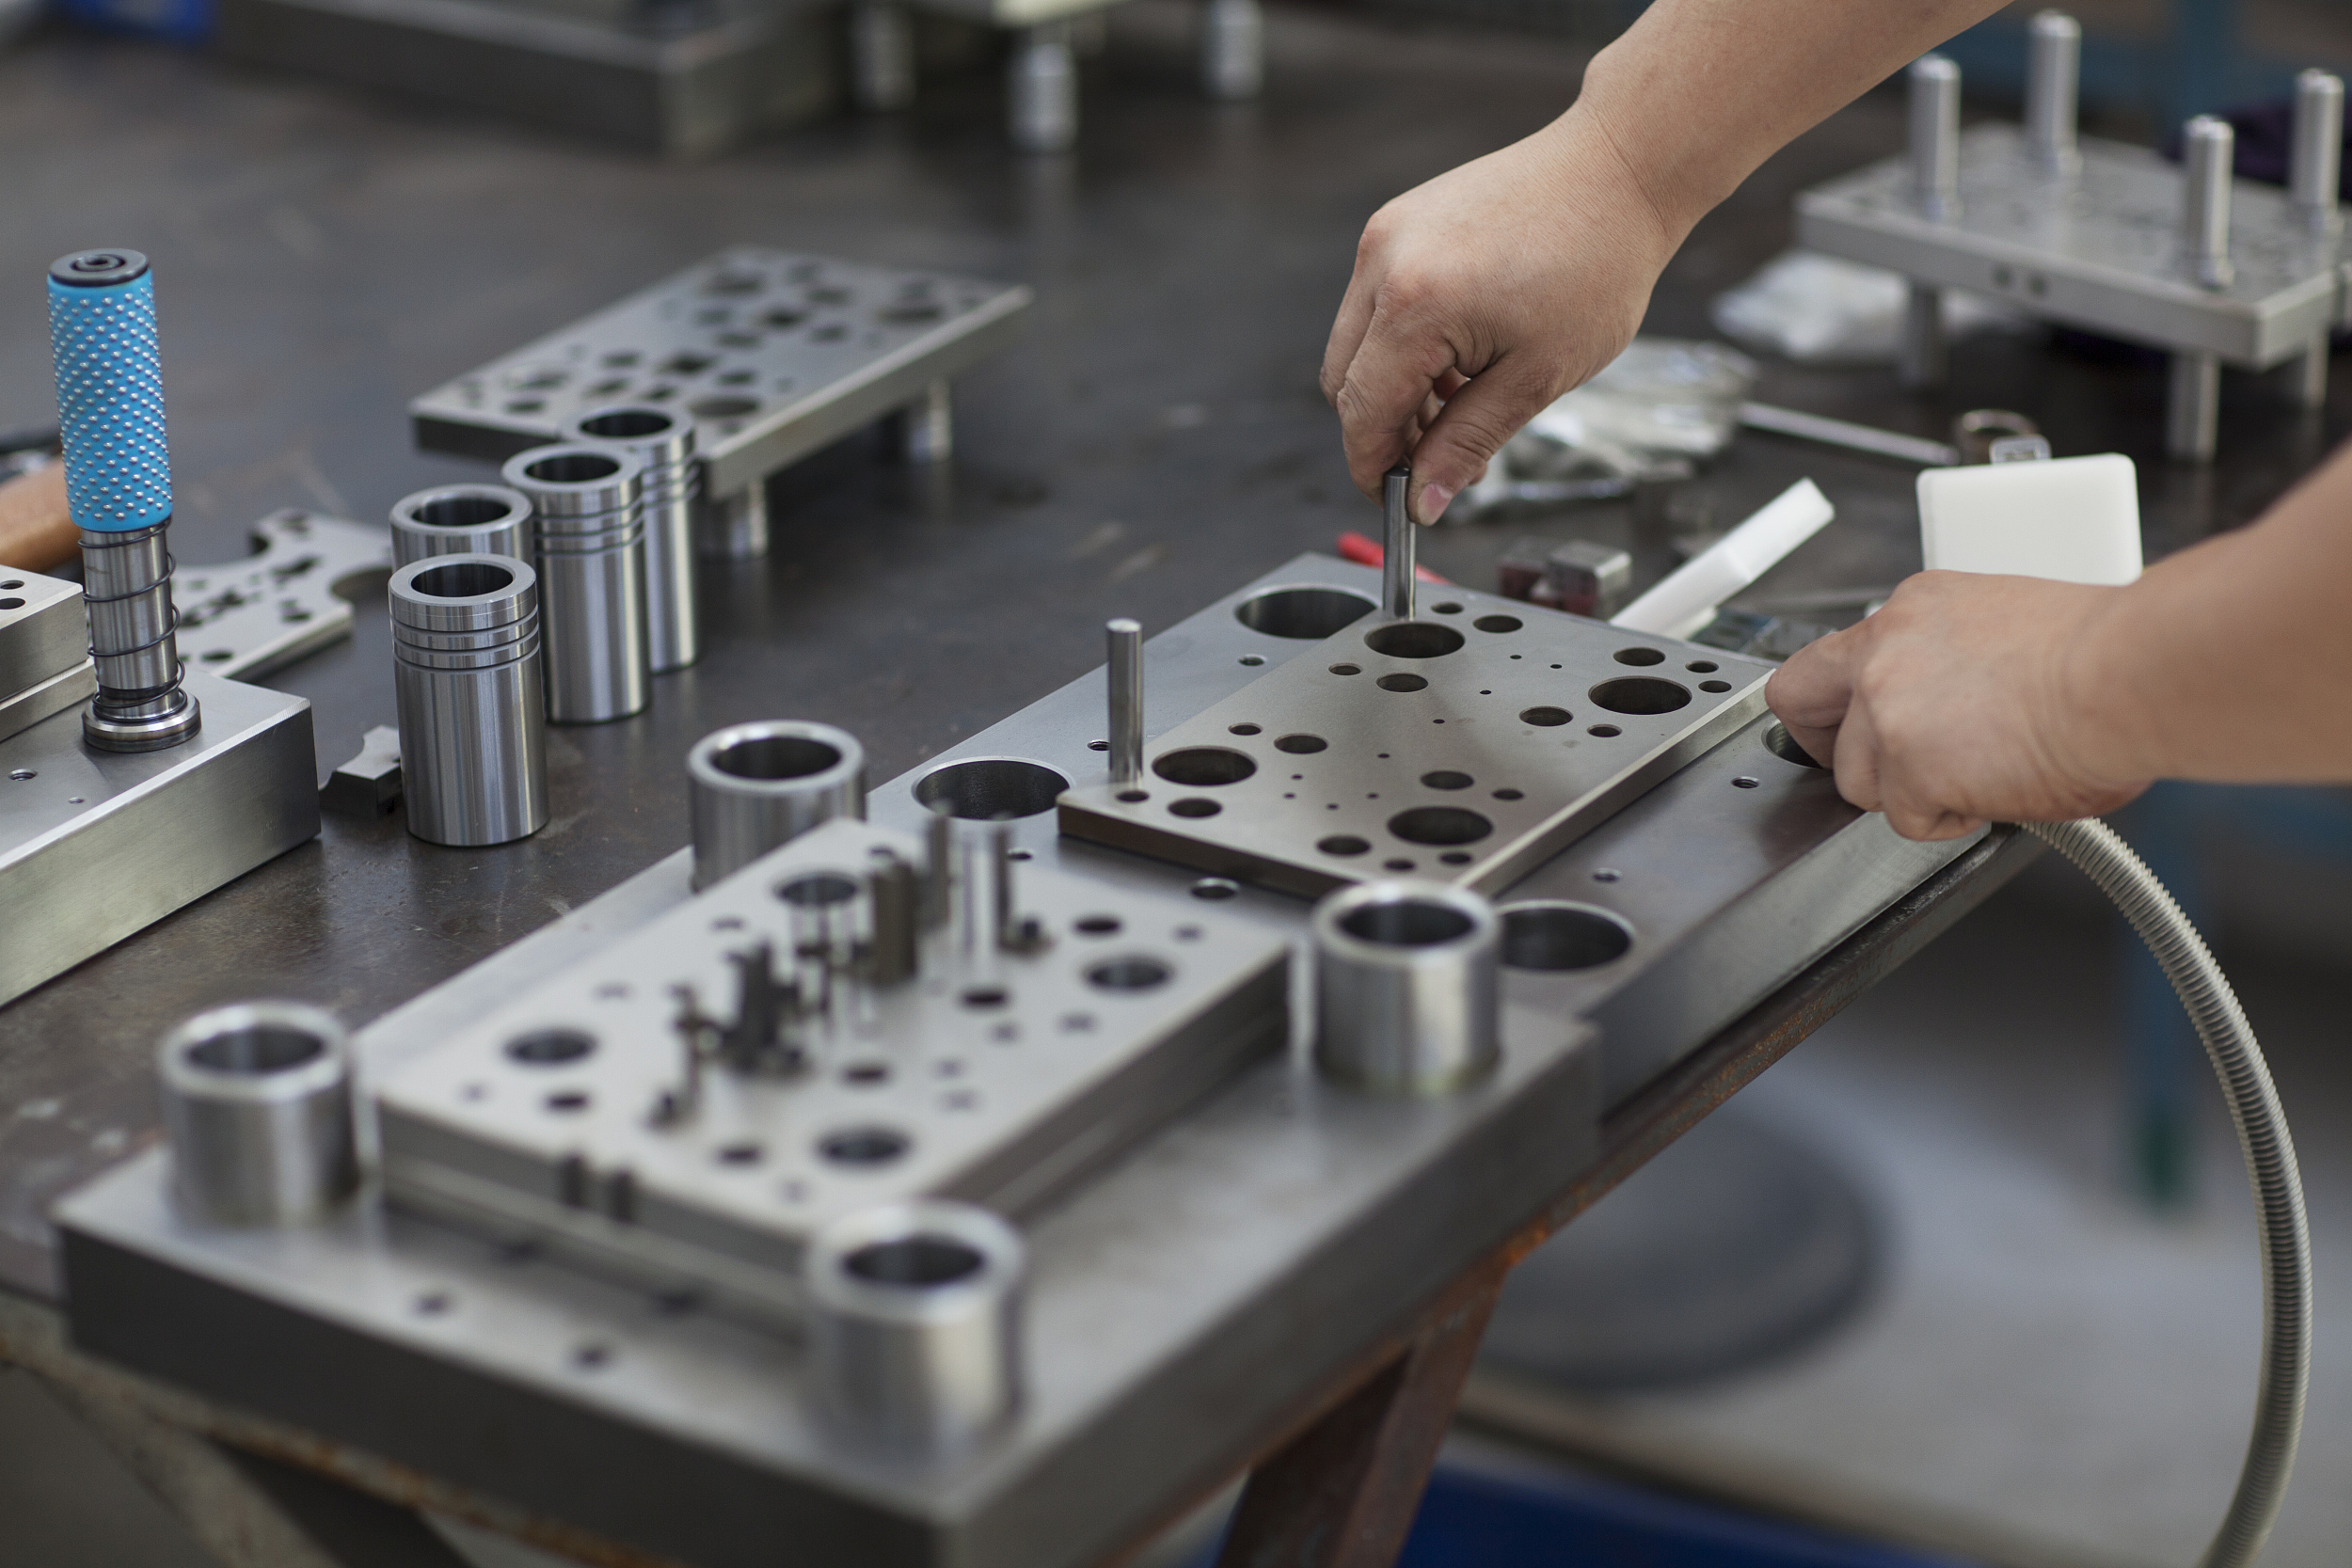 Travailleur ajustant des moules de précision pour l'injection plastique dans un atelier industriel, mettant en évidence des compétences en fabrication métallique sur mesure.